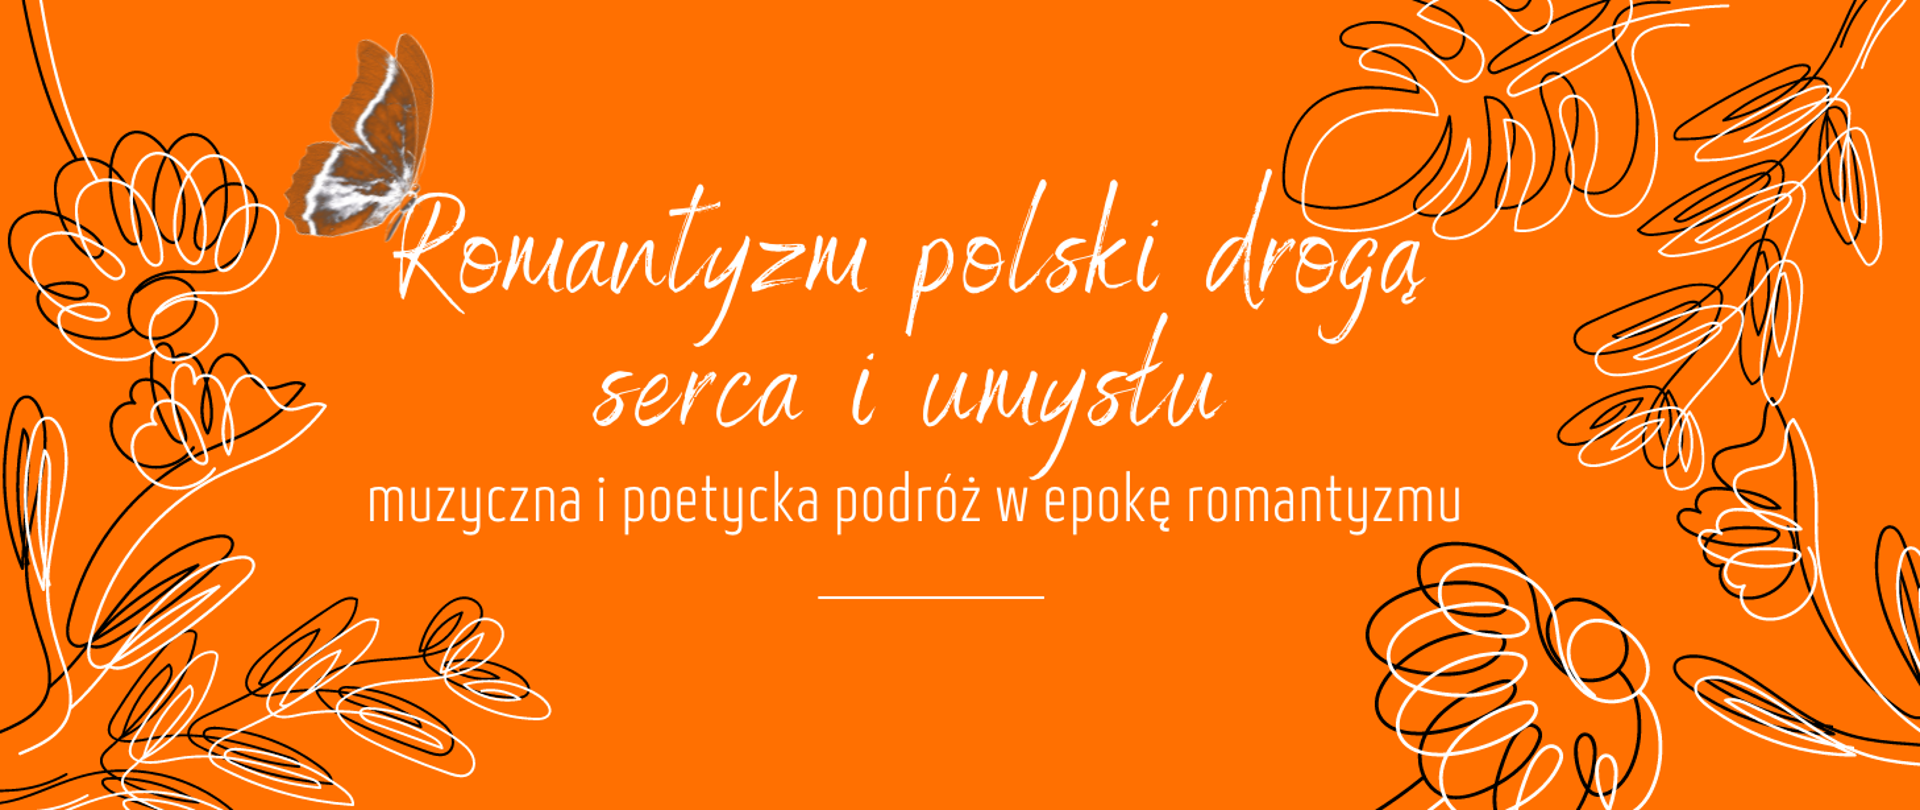 grafika, pomarańczowe tło, po prawej i lewej stronie linearne kwiaty i liście w kolorach białym i czarnym, na środku w kolorze białym napis romantyzm polski drogą serca i umysłu muzyczna i poetycka podróż w epokę romantyzmu